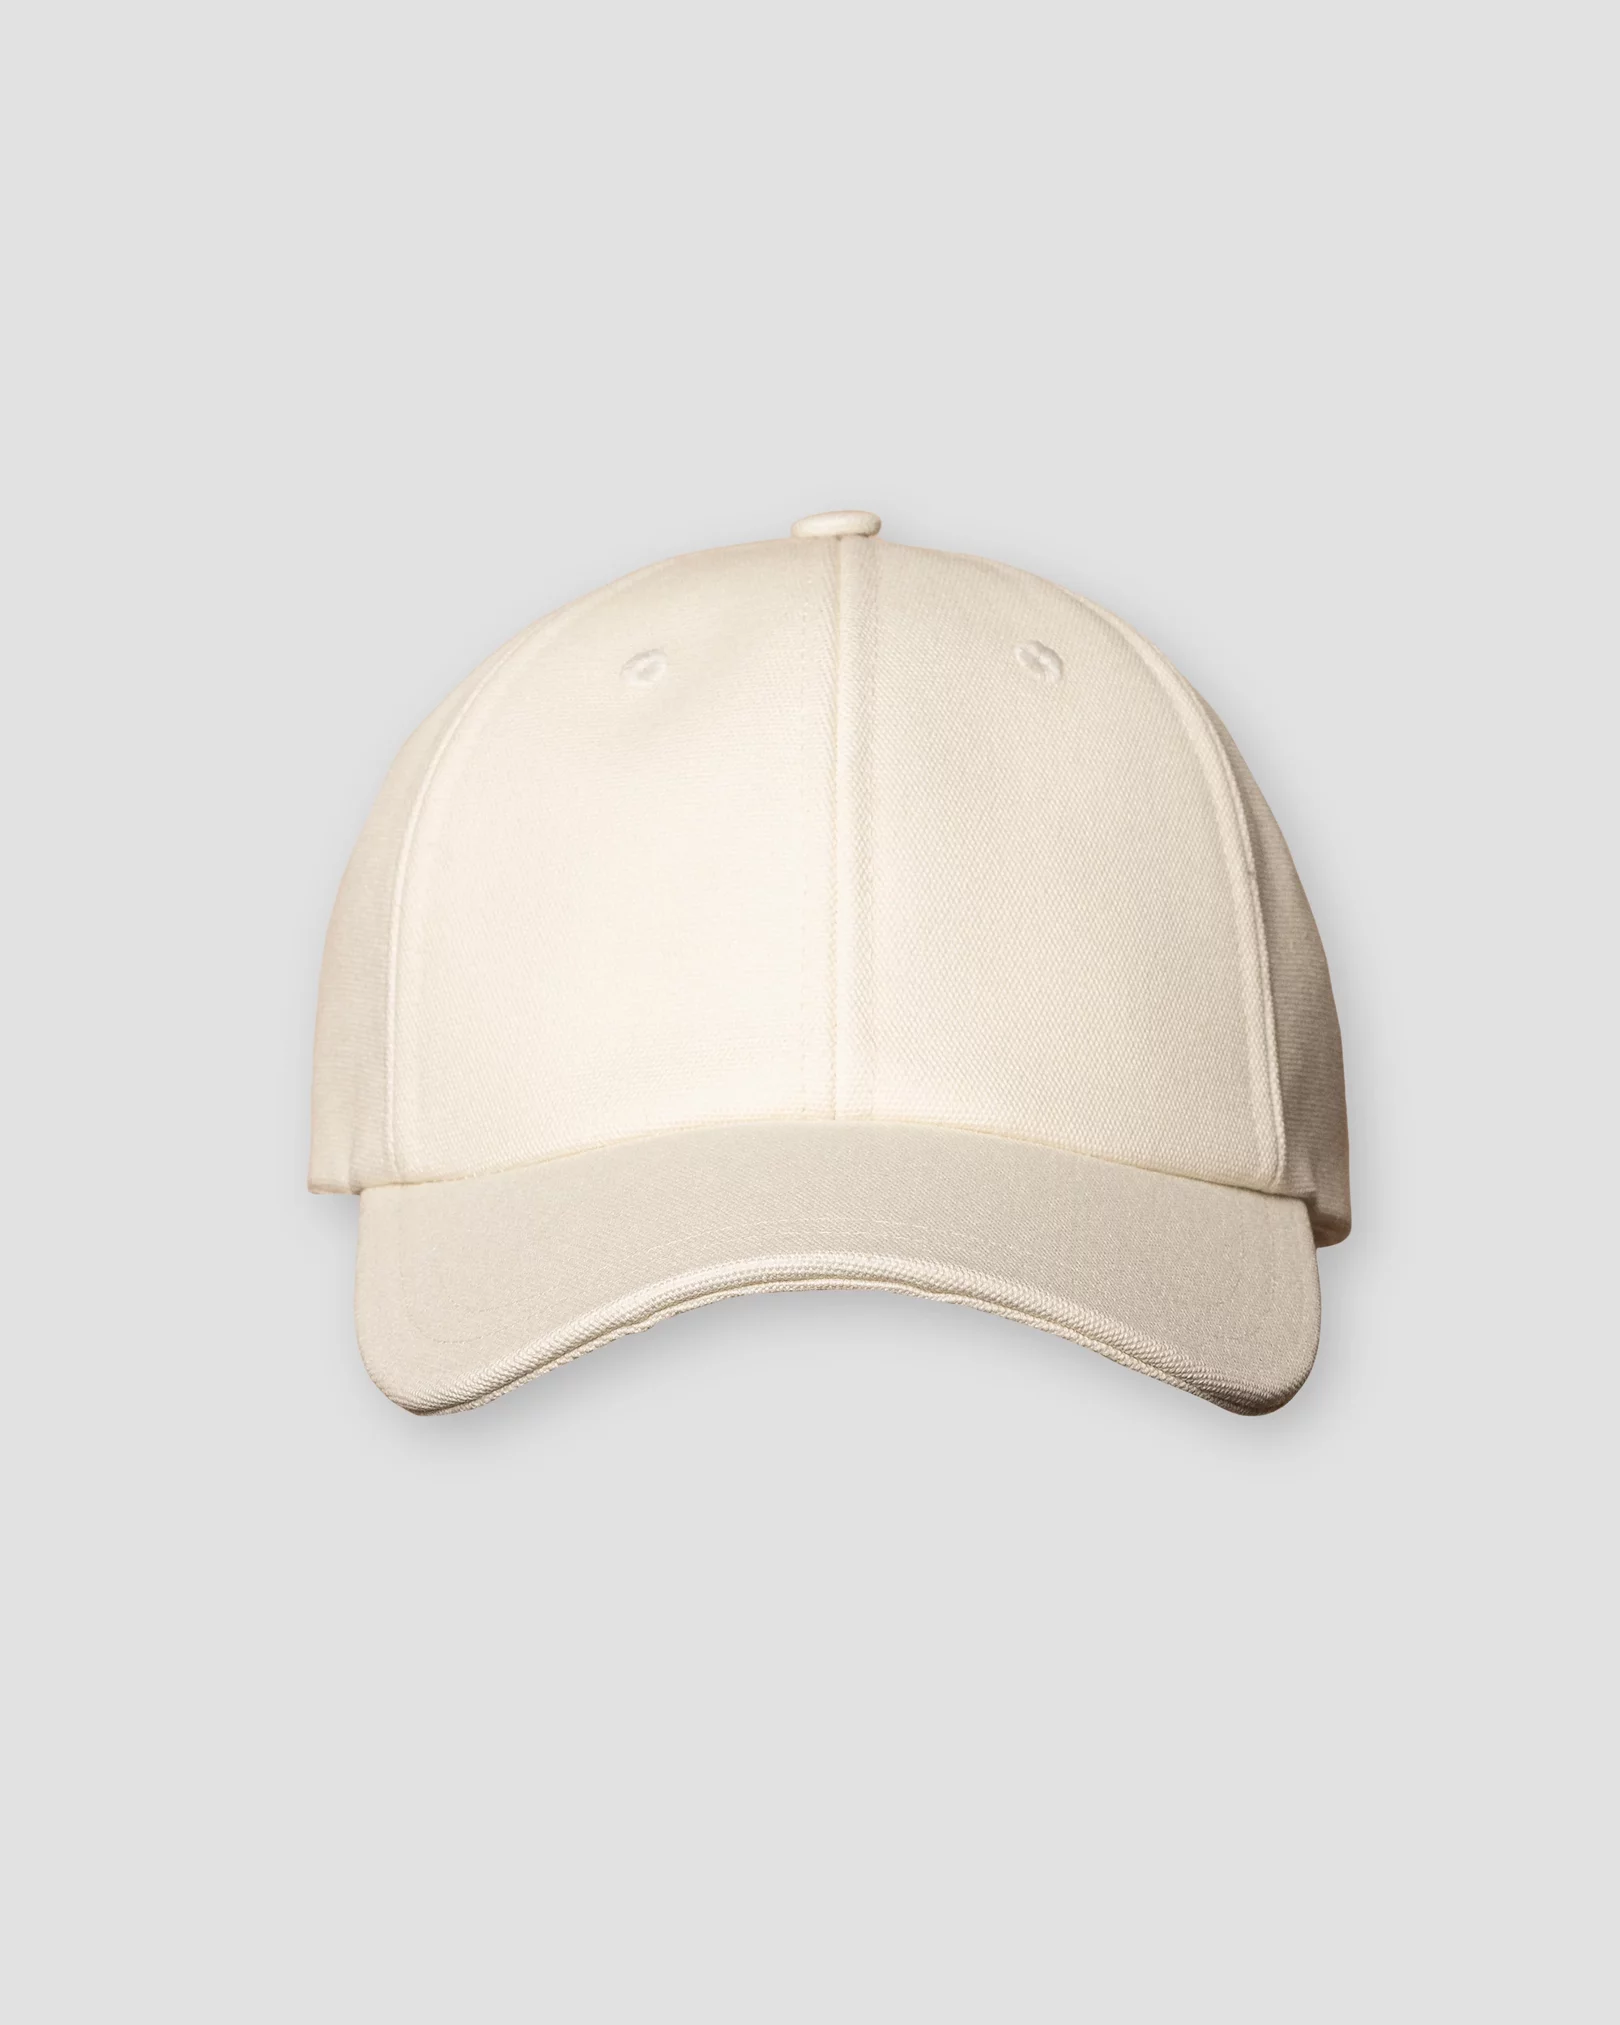 Eton - off white cap